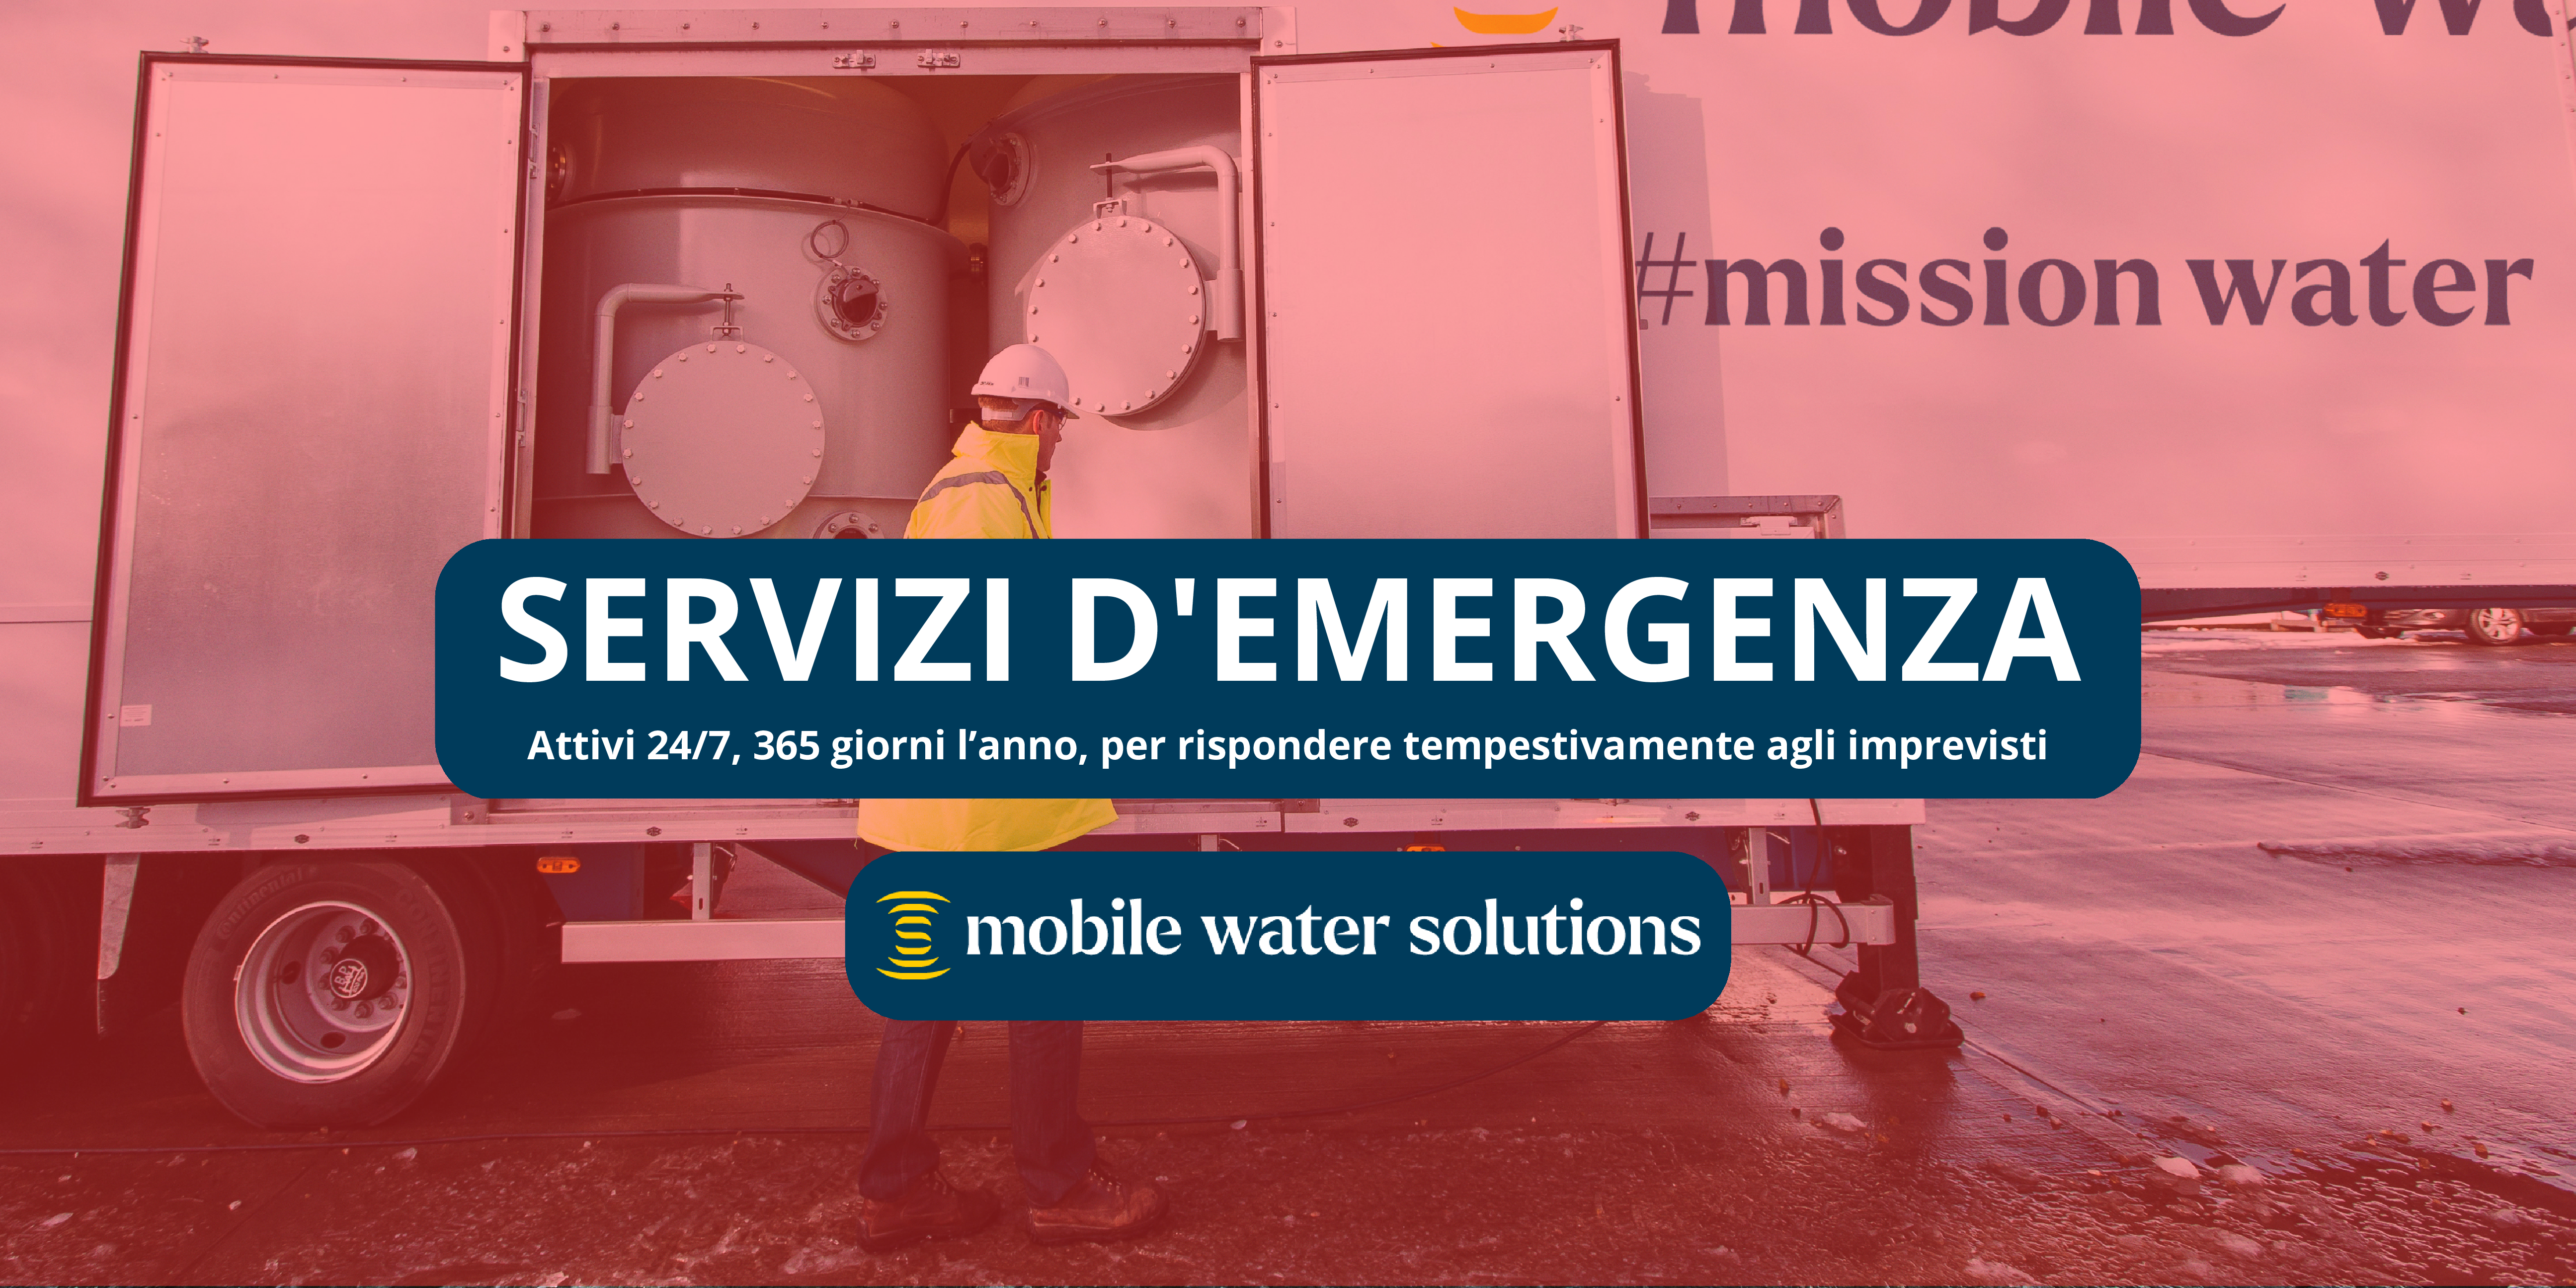 Servizi d’emergenza: Impianti temporanei di trattamento delle acque